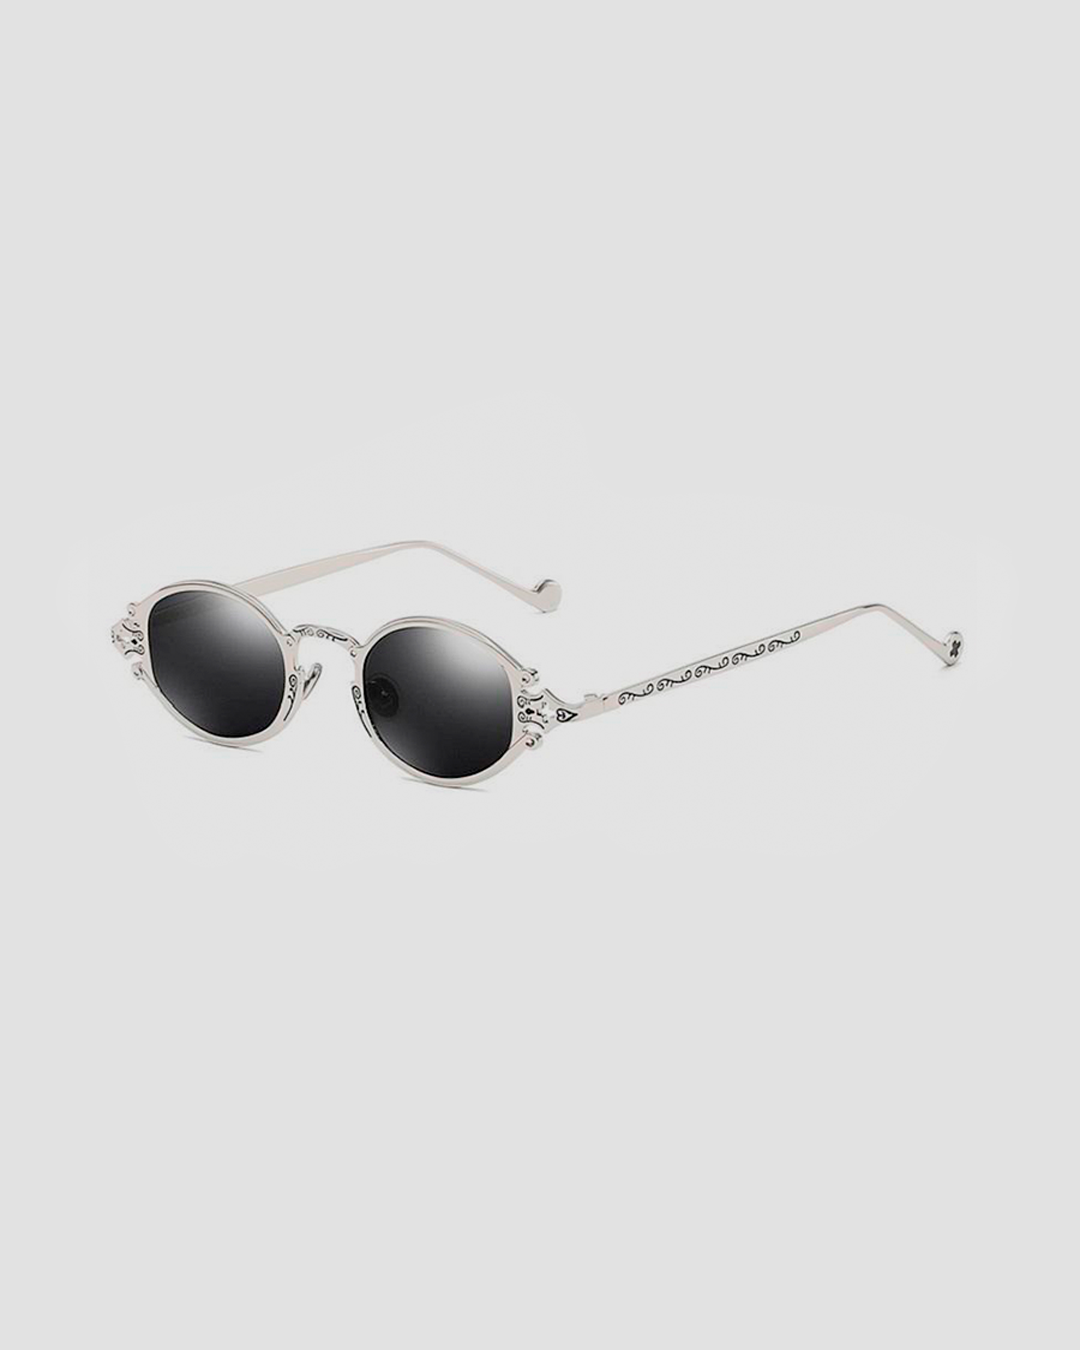 Taskmaster Sunglasses